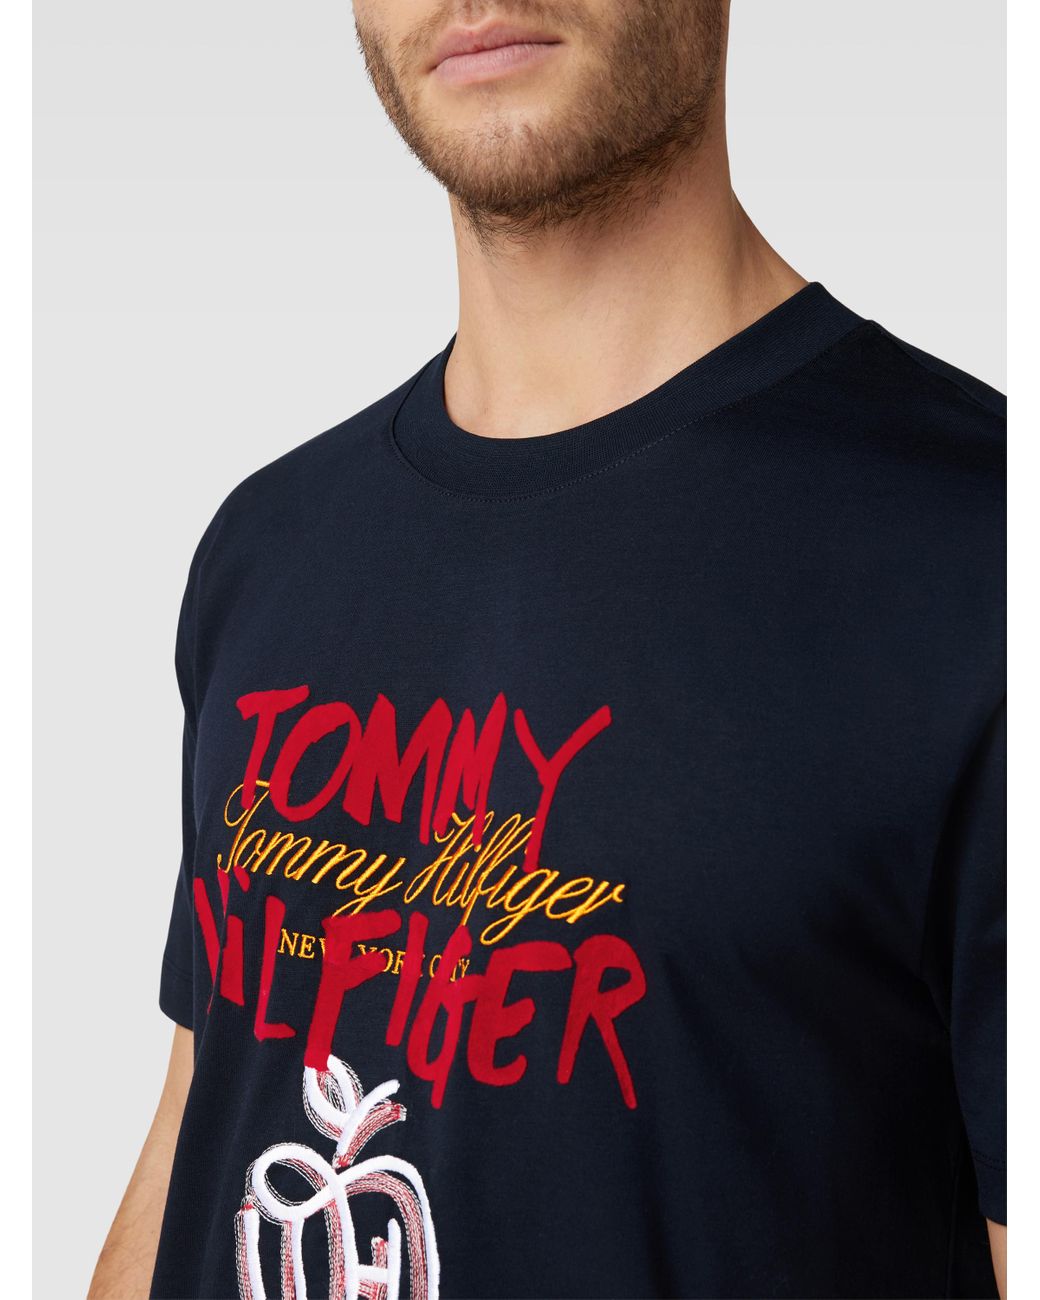 Tommy Hilfiger Casual Fit für in AT Lyst | Modell \'POP Label-Stitching mit PREP\' Blau Herren T-Shirt